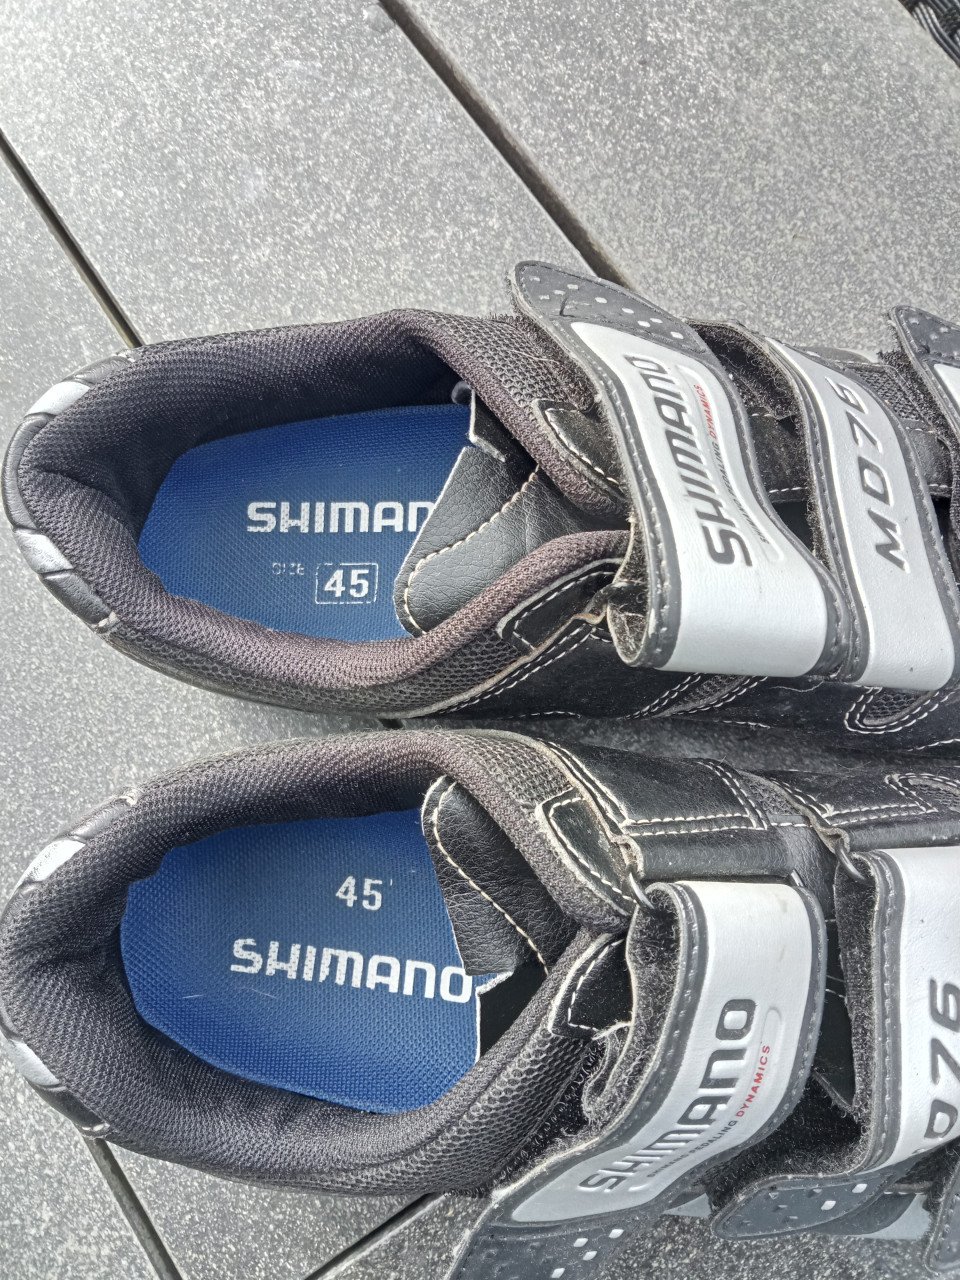 Shimano wielrenschoenen maat 45